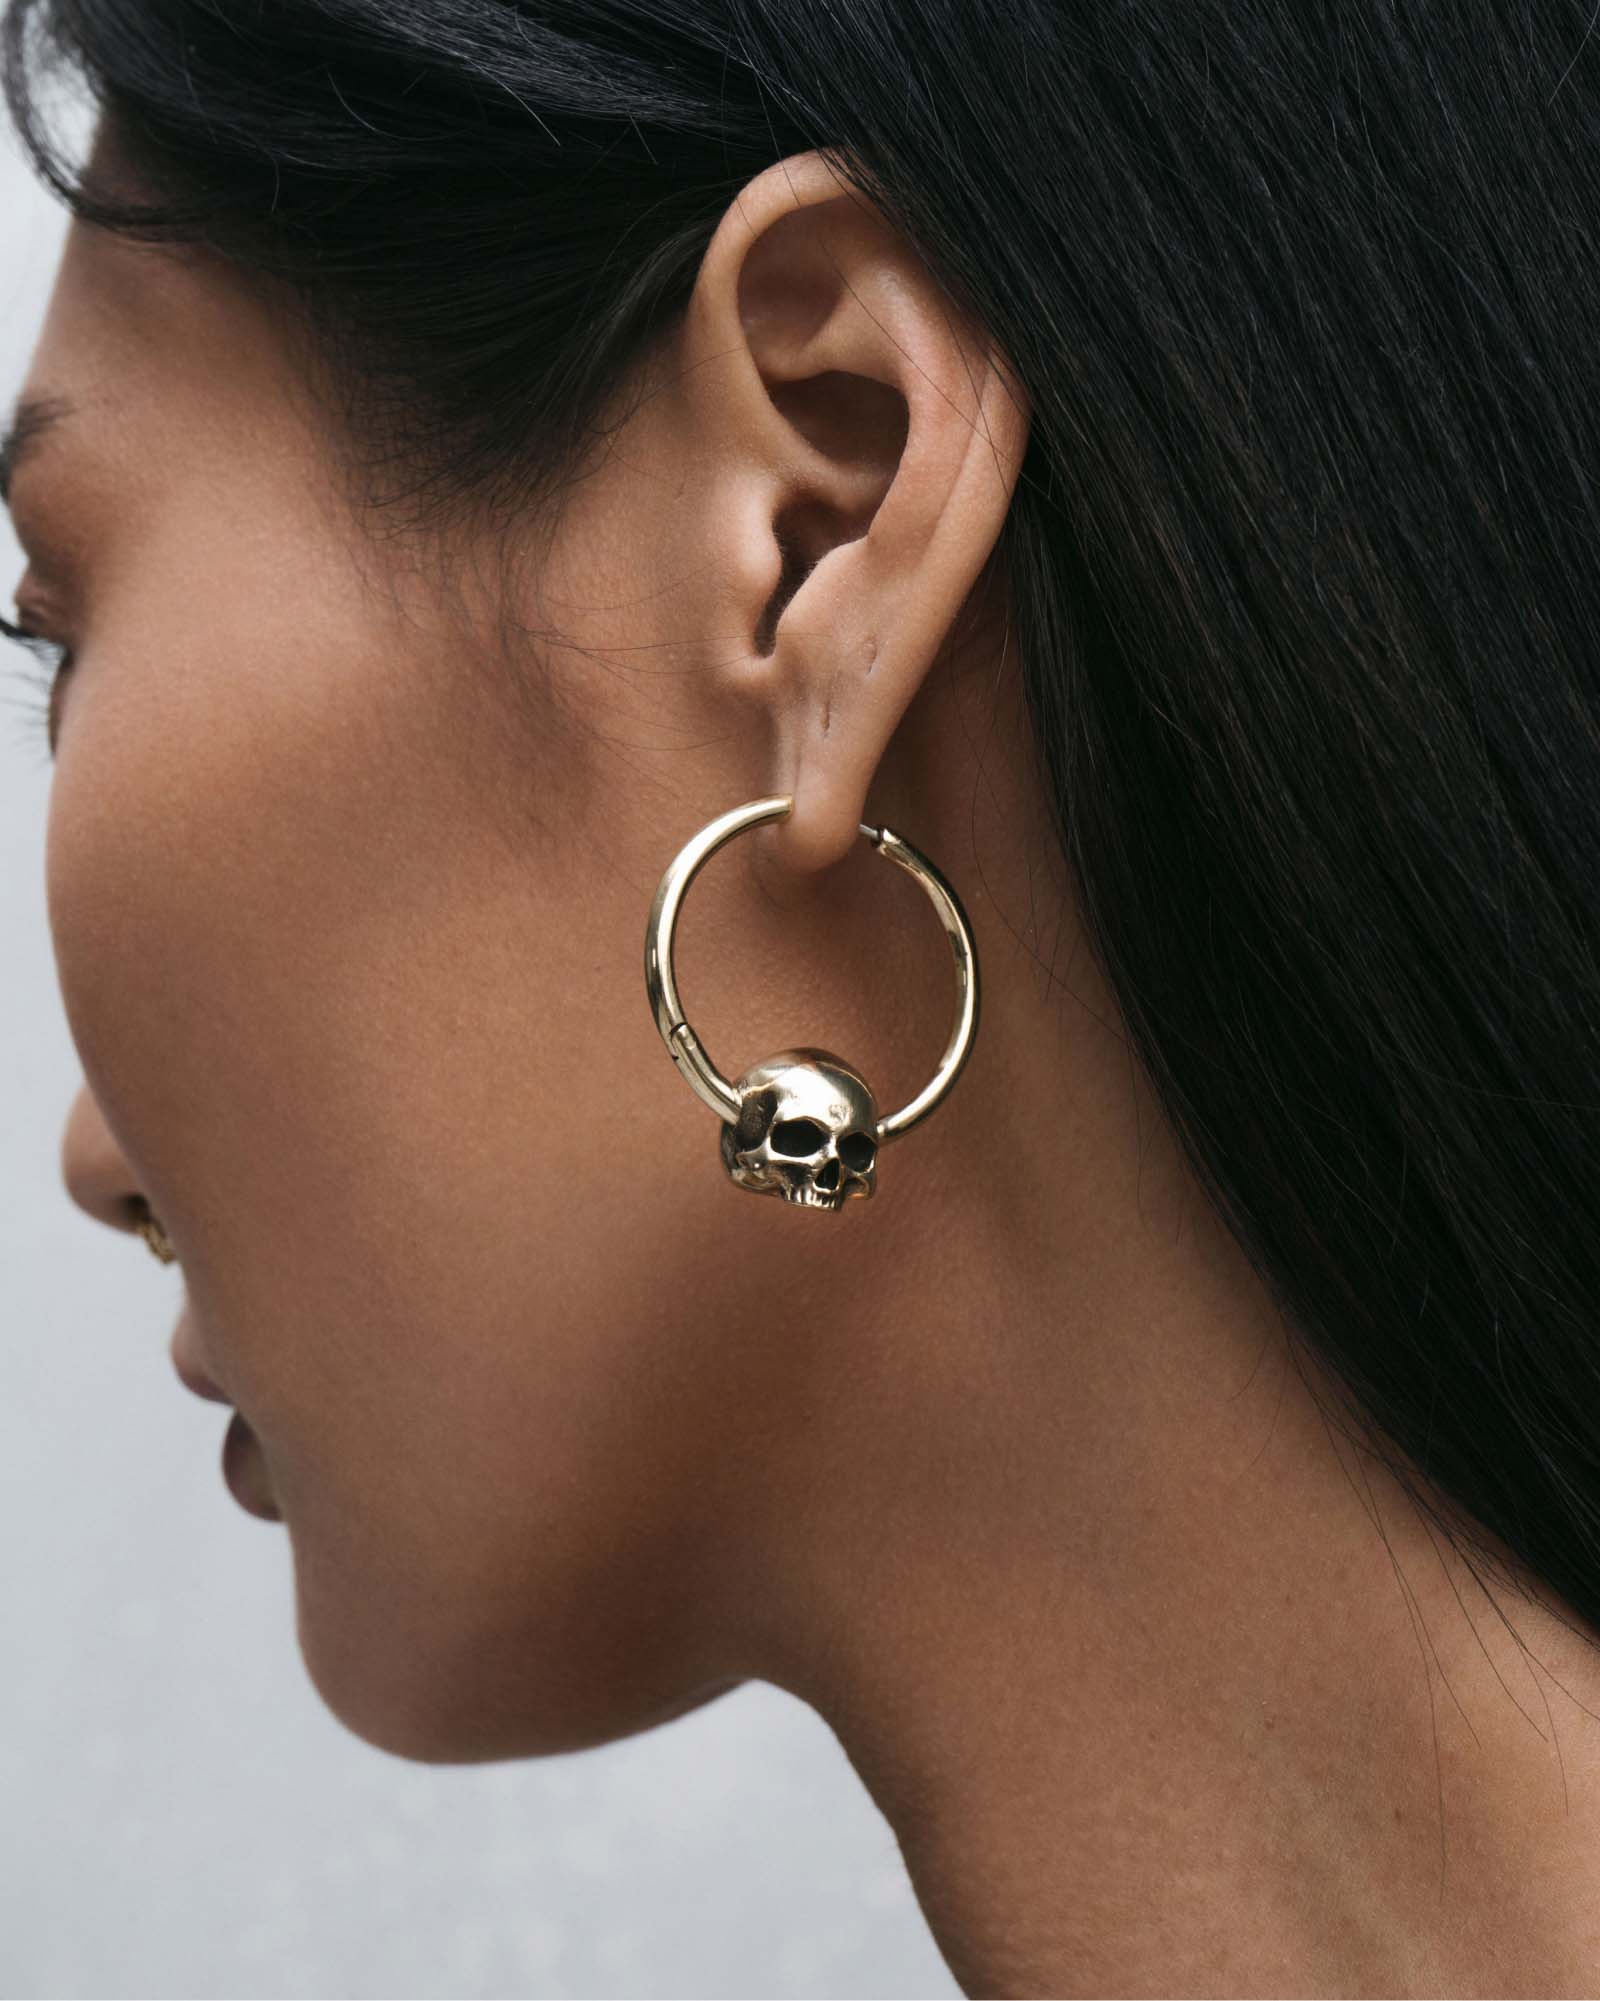 Silver hoop earrings - part 2